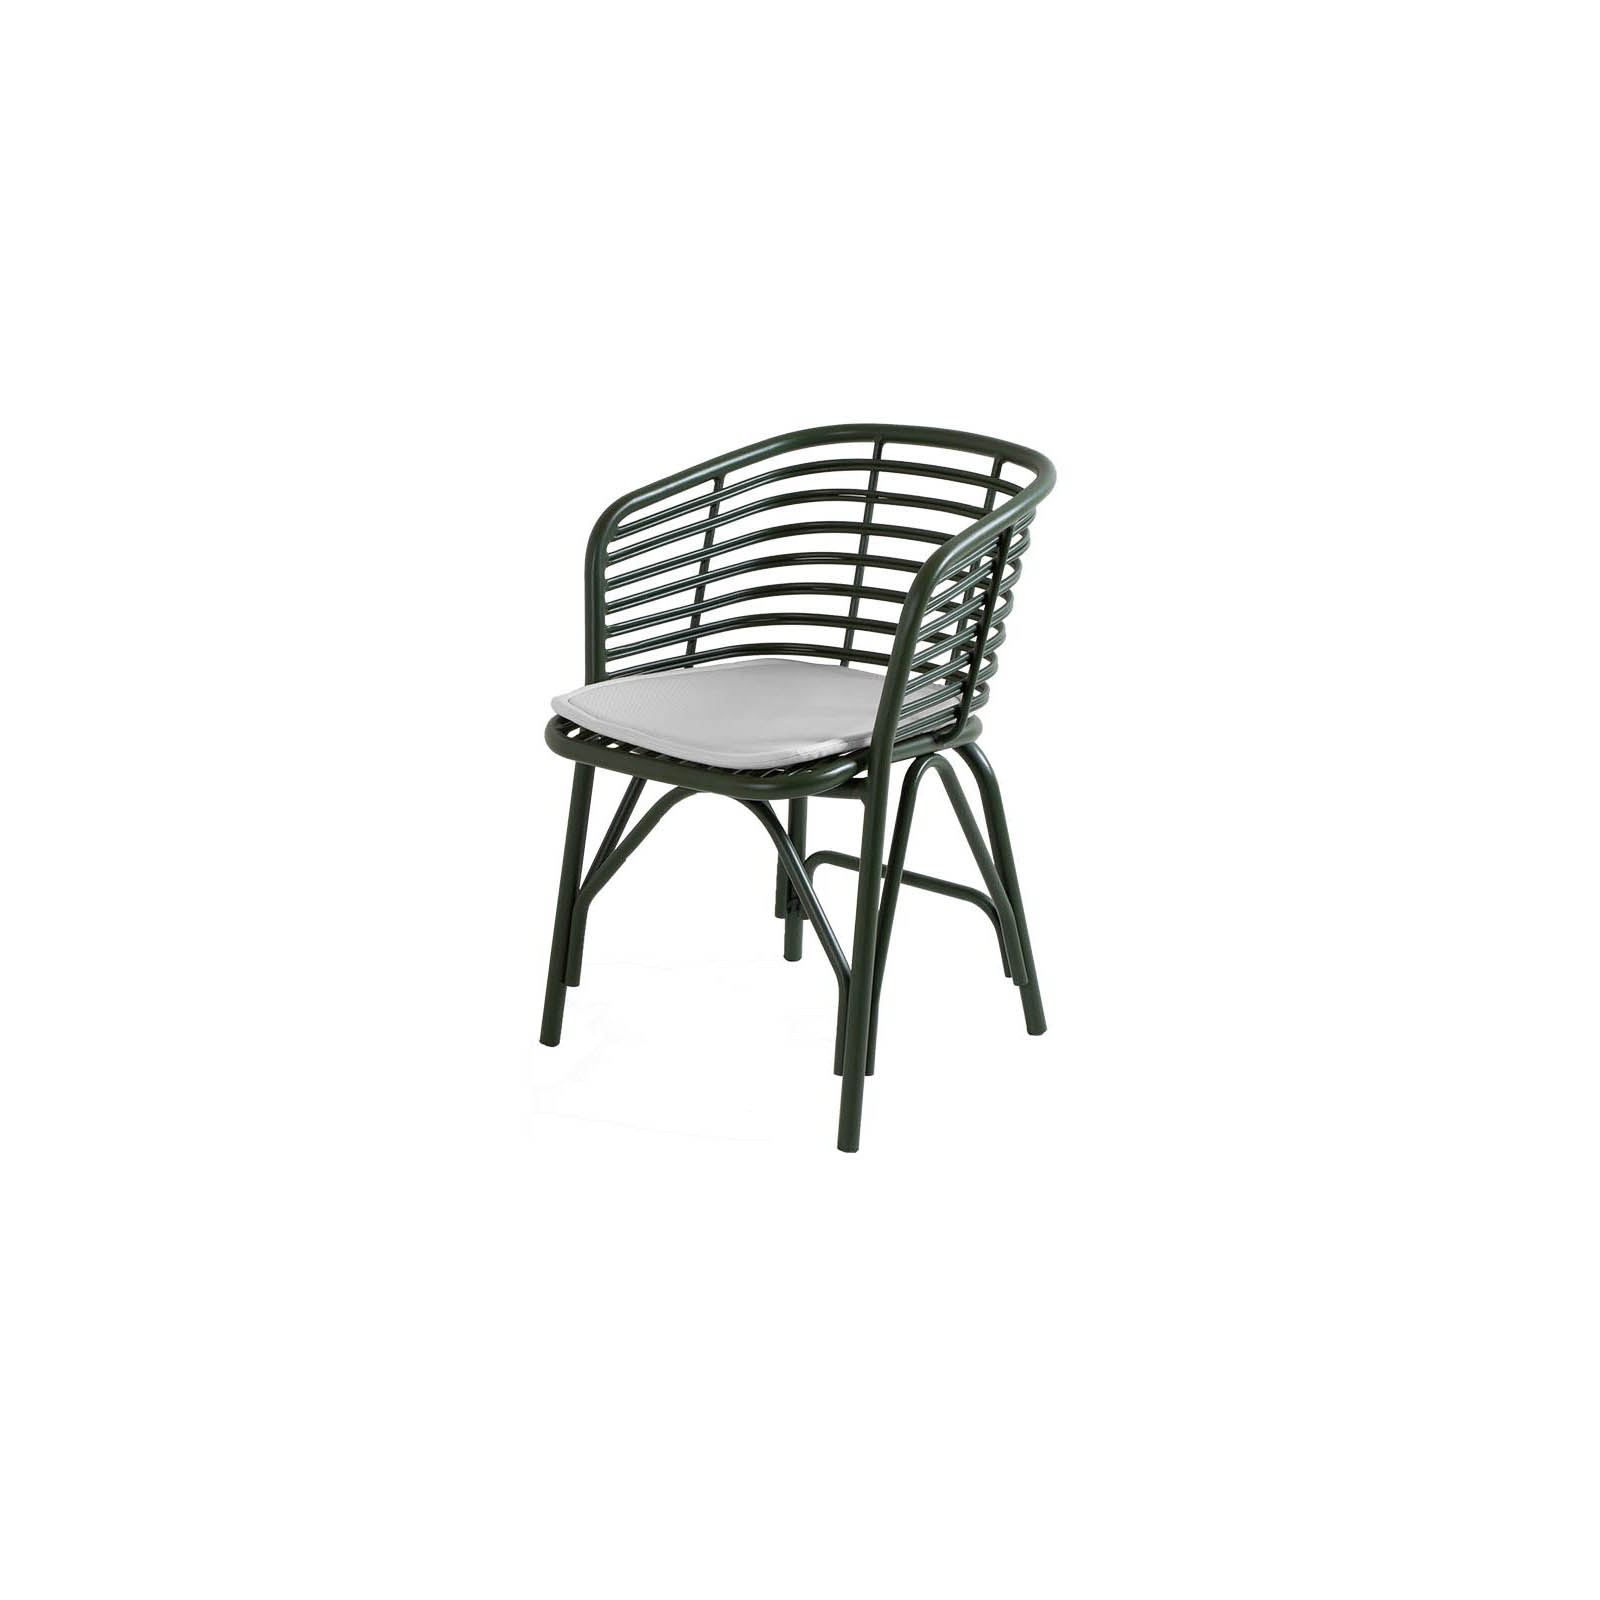 Blend Stuhl aus Aluminium in Dark Green mit Kissen aus Cane-line Natté in White